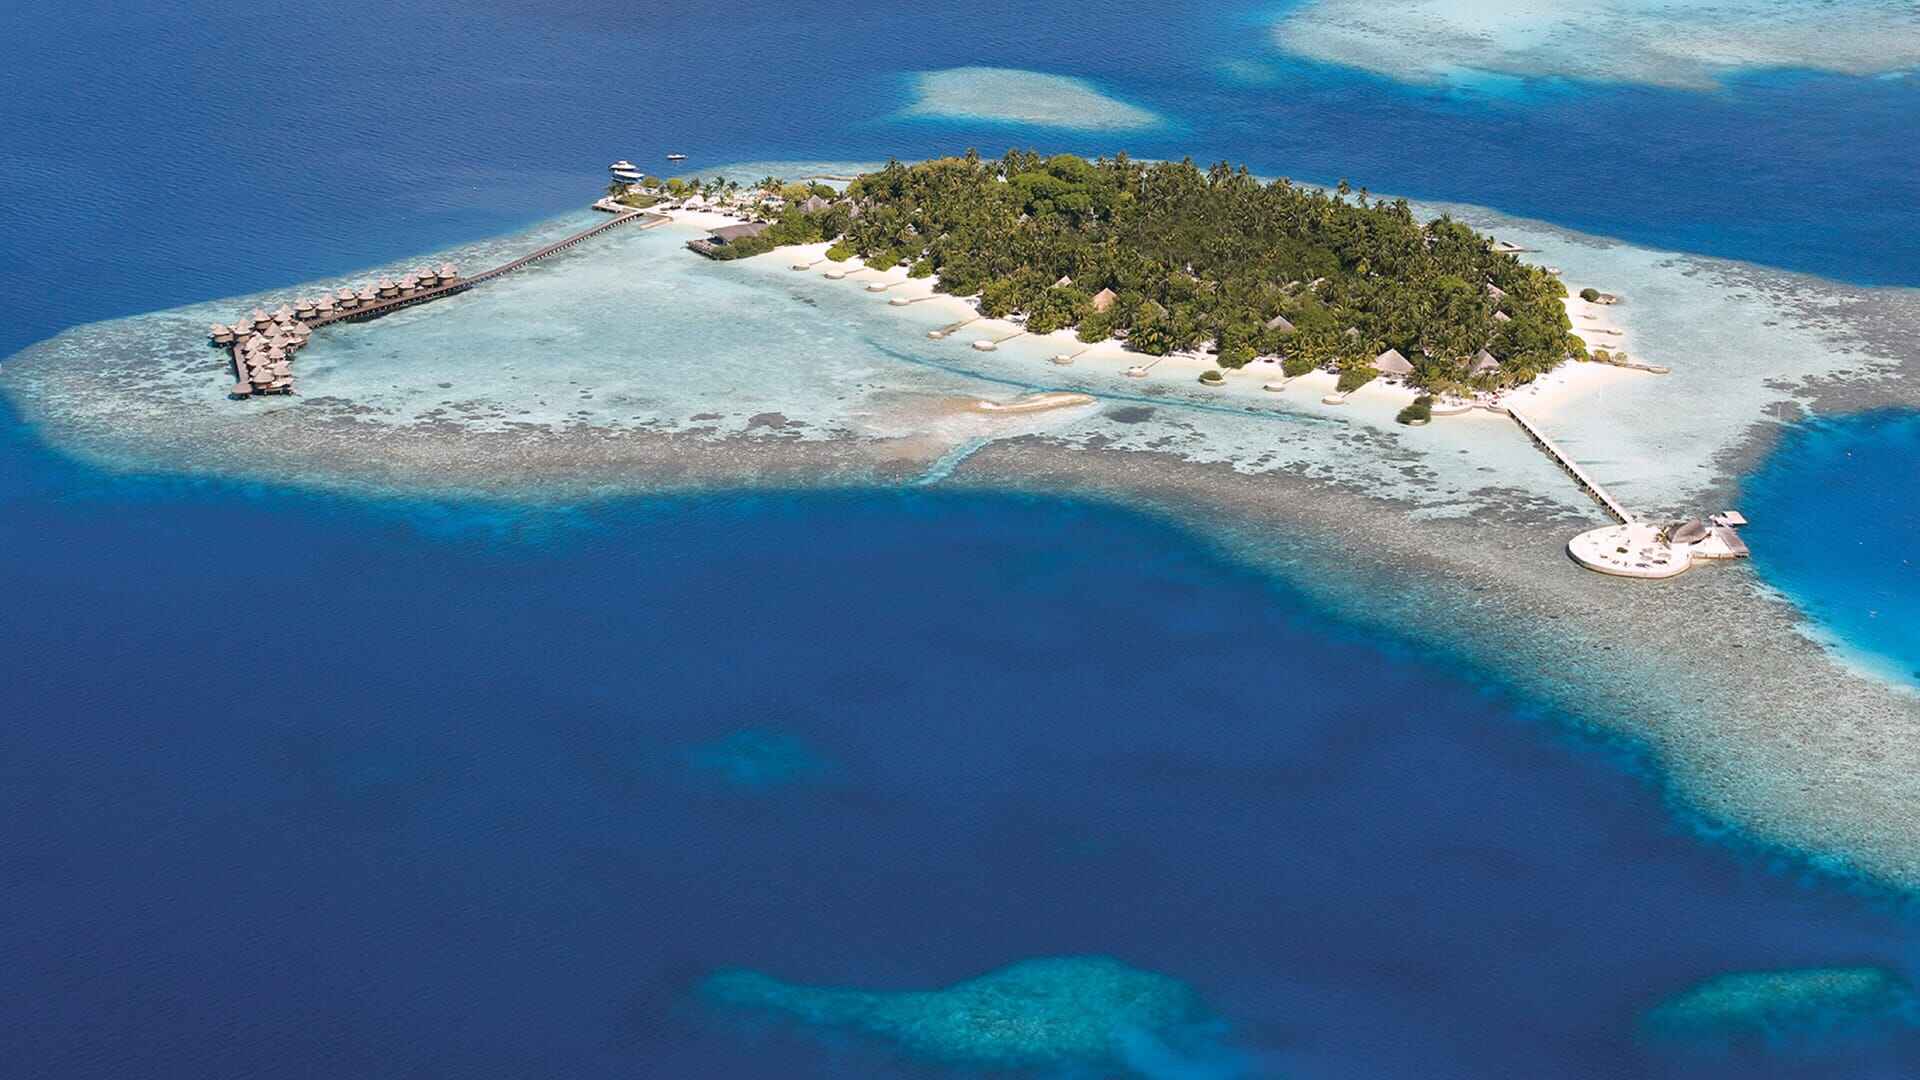 Kihaa Maldives Resort and Spa In Maldives